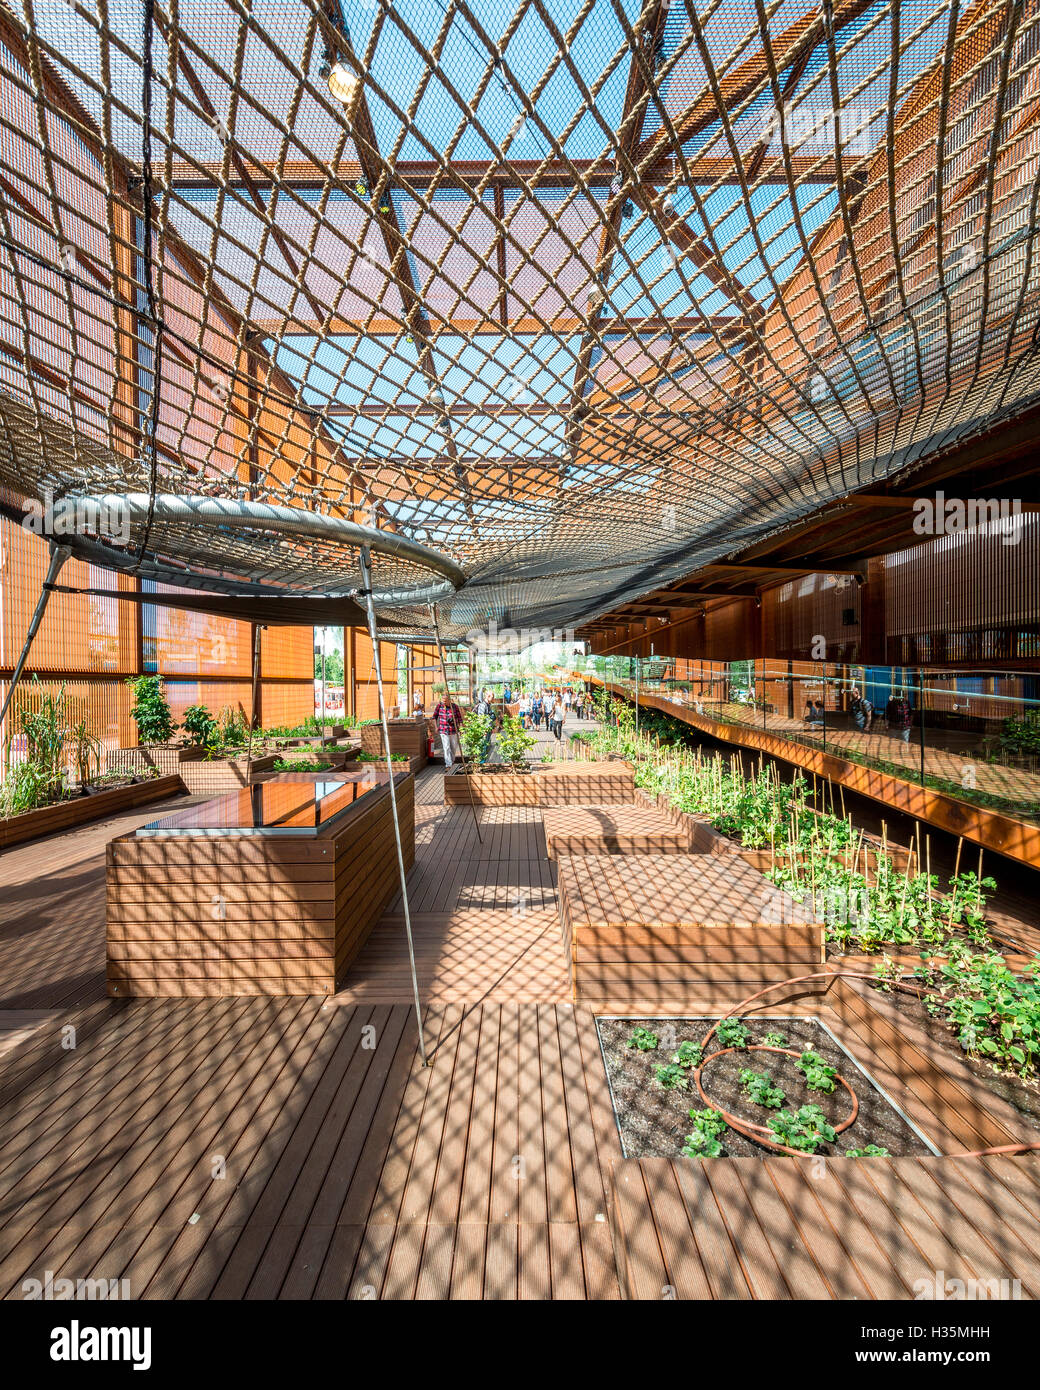 Außenansicht des Brasilien-Pavillons auf der Expo 2015 Milano Italy Architekten von Studio Arthur Casas & Atelier Marko Brajovic. Stockfoto